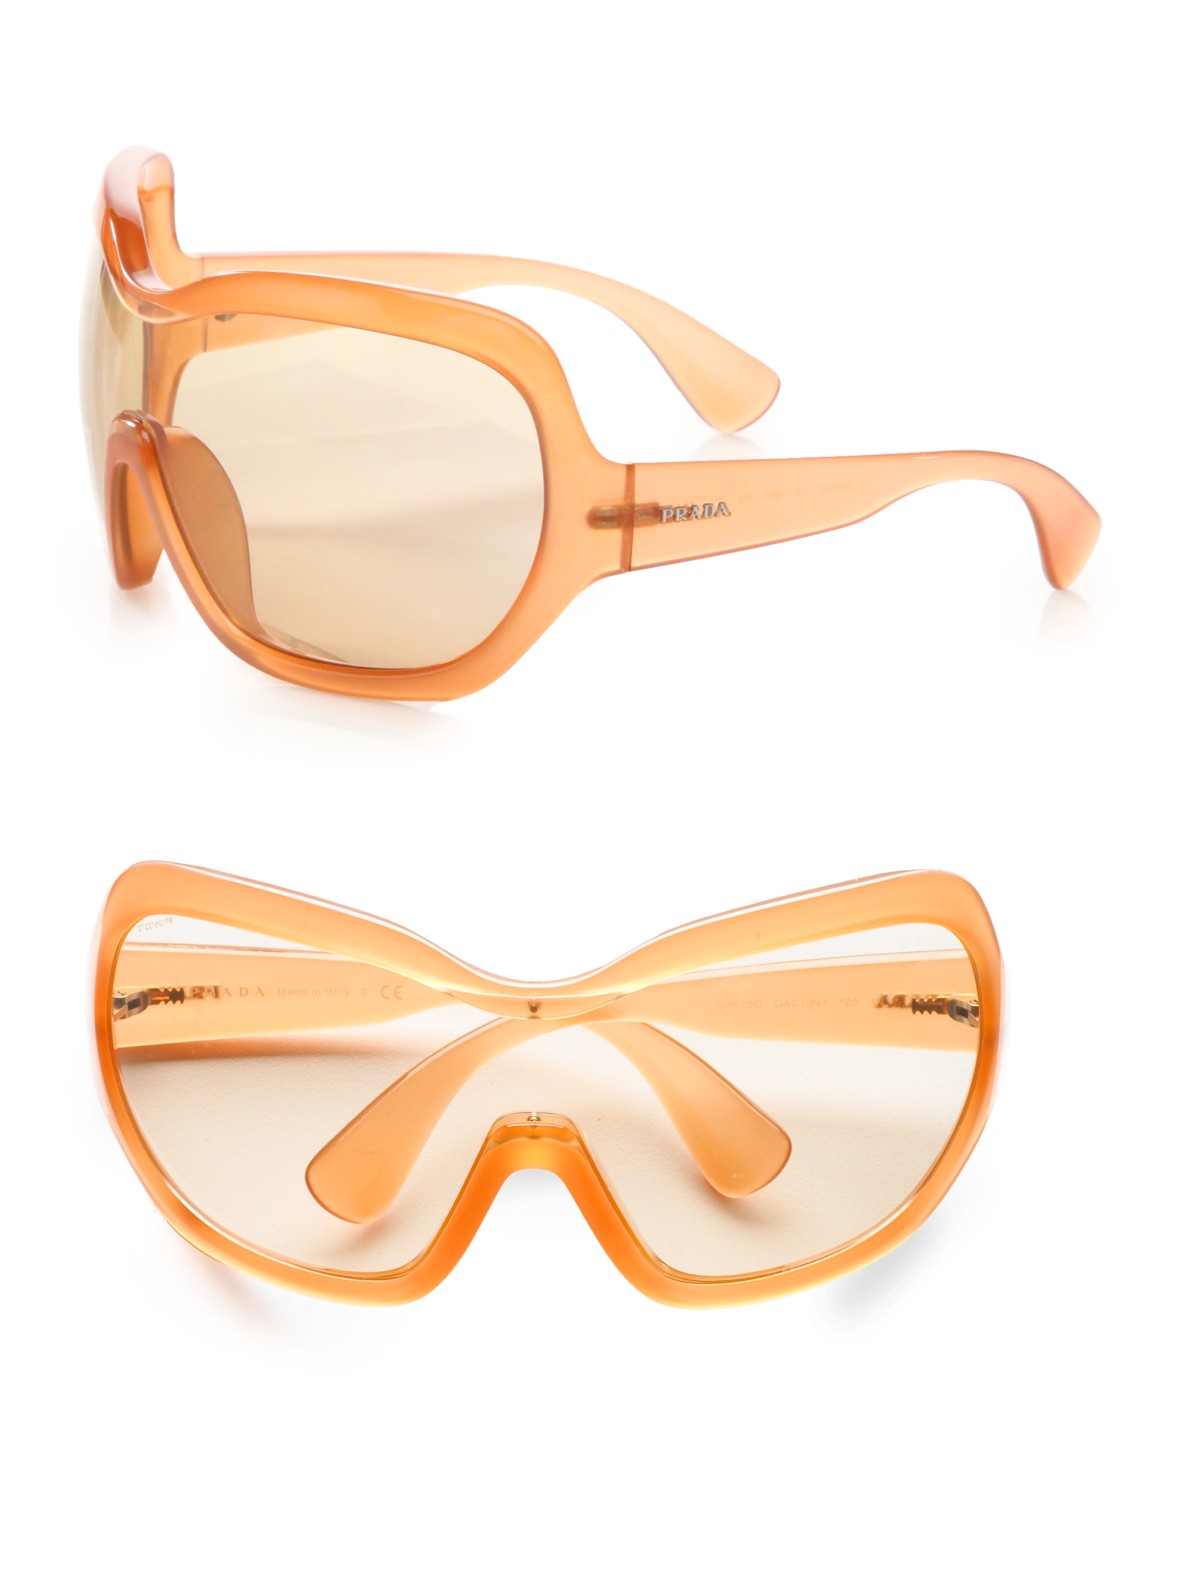 prada inspired sunglasses, OFF 79%,www.amarkotarim.com.tr